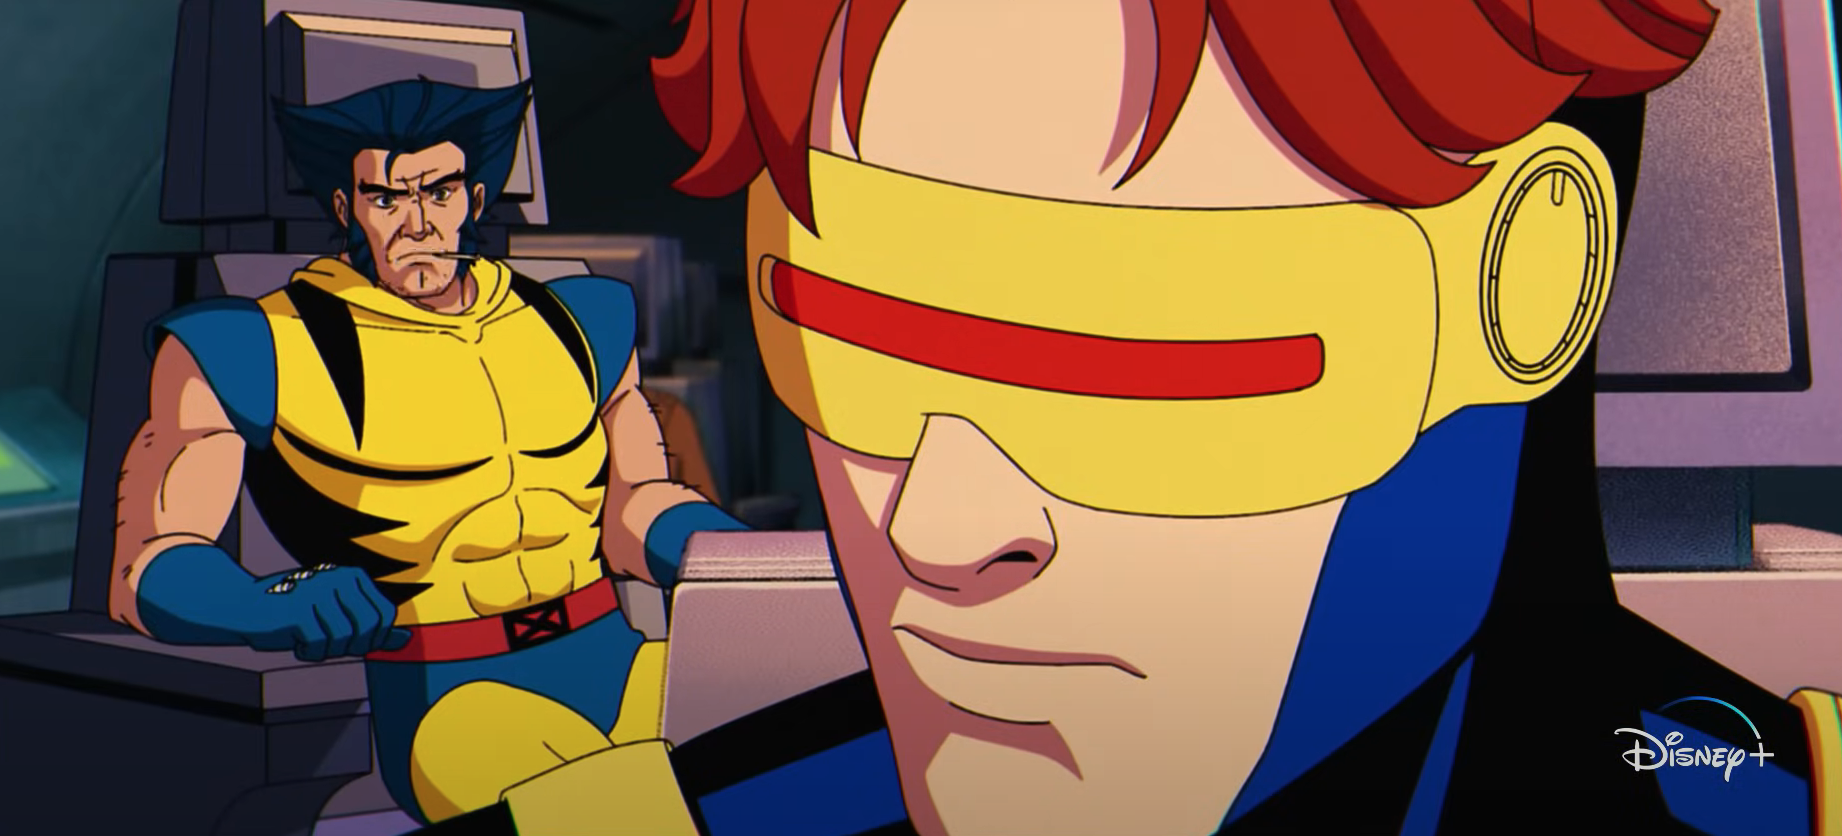 Disney Plus : les X-Men font leur grand retour dans une nouvelle série animée